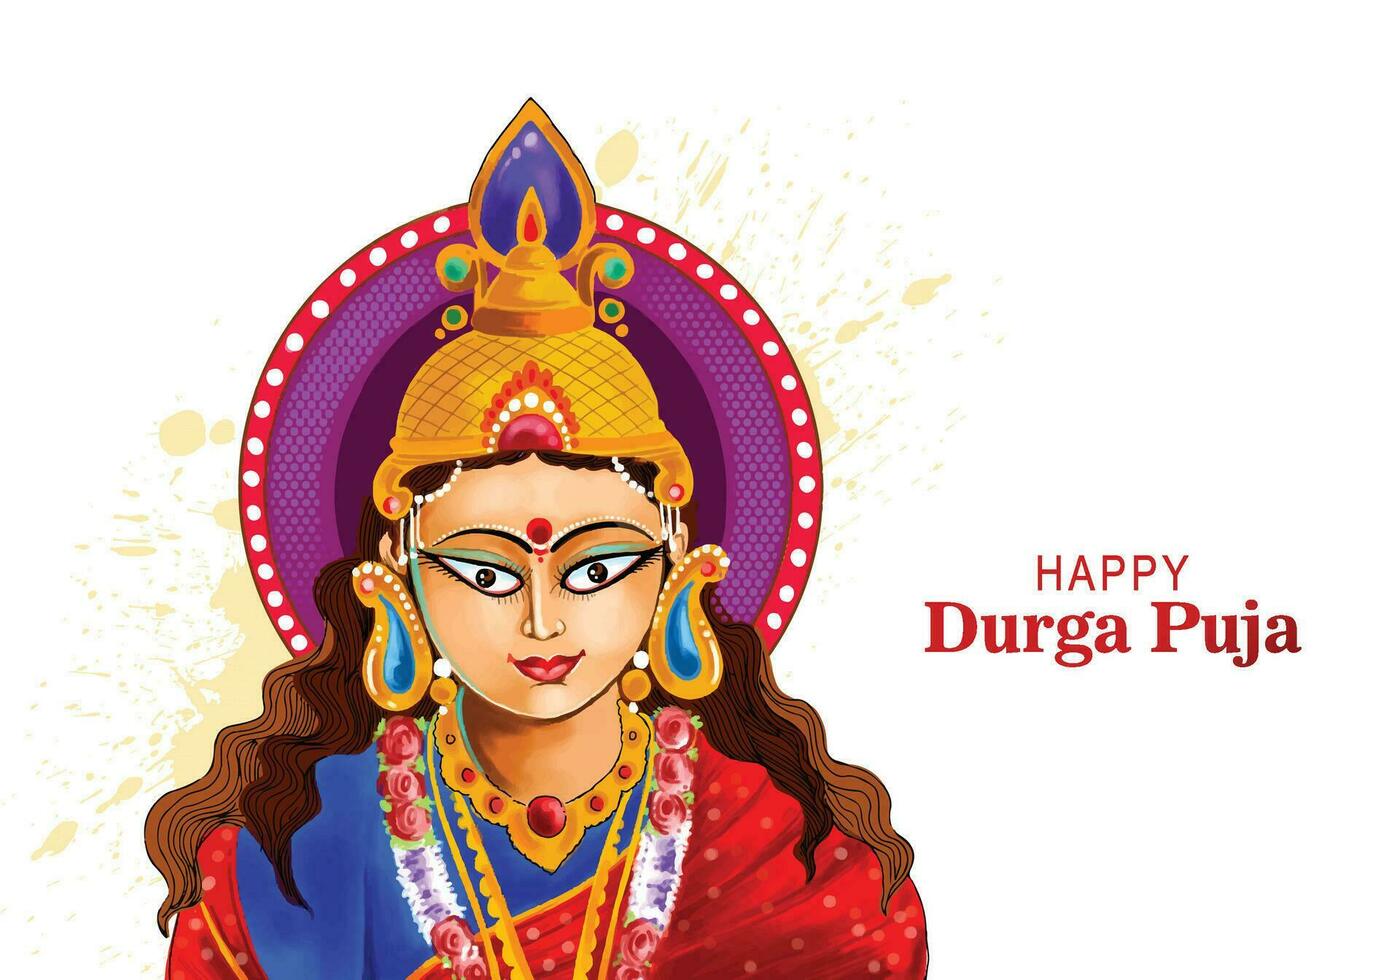 schönes gesicht der göttin durga puja für shubh navratri festival hintergrund vektor